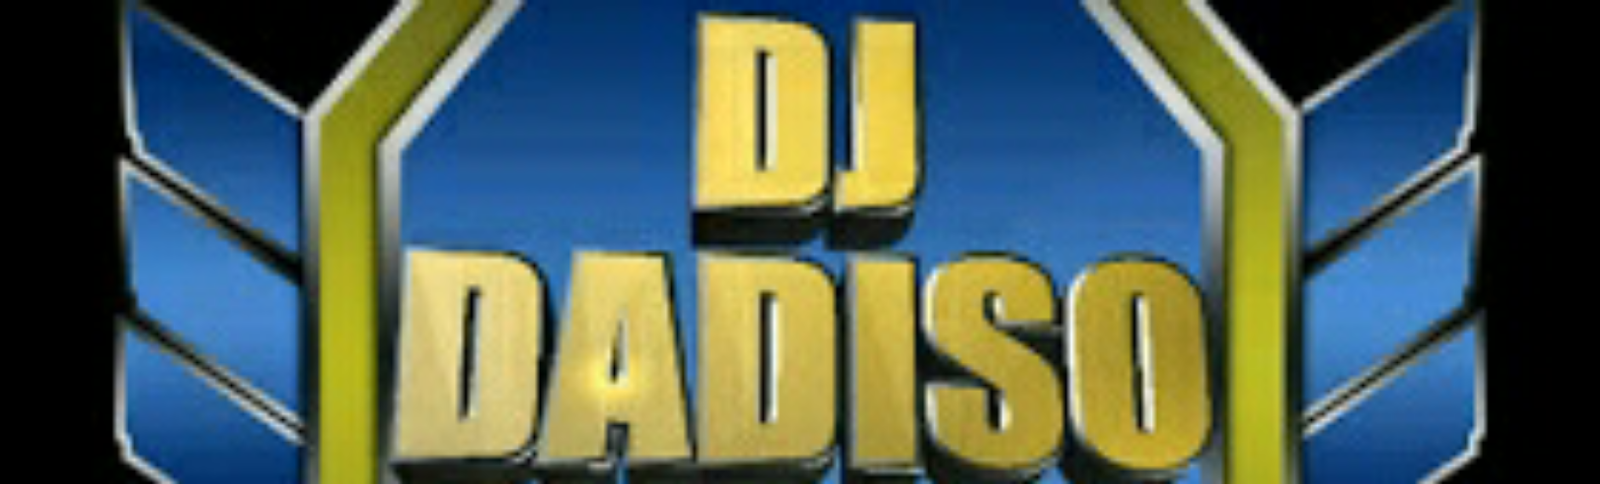 DJ DADISO - OFFICIAL WEBSITE